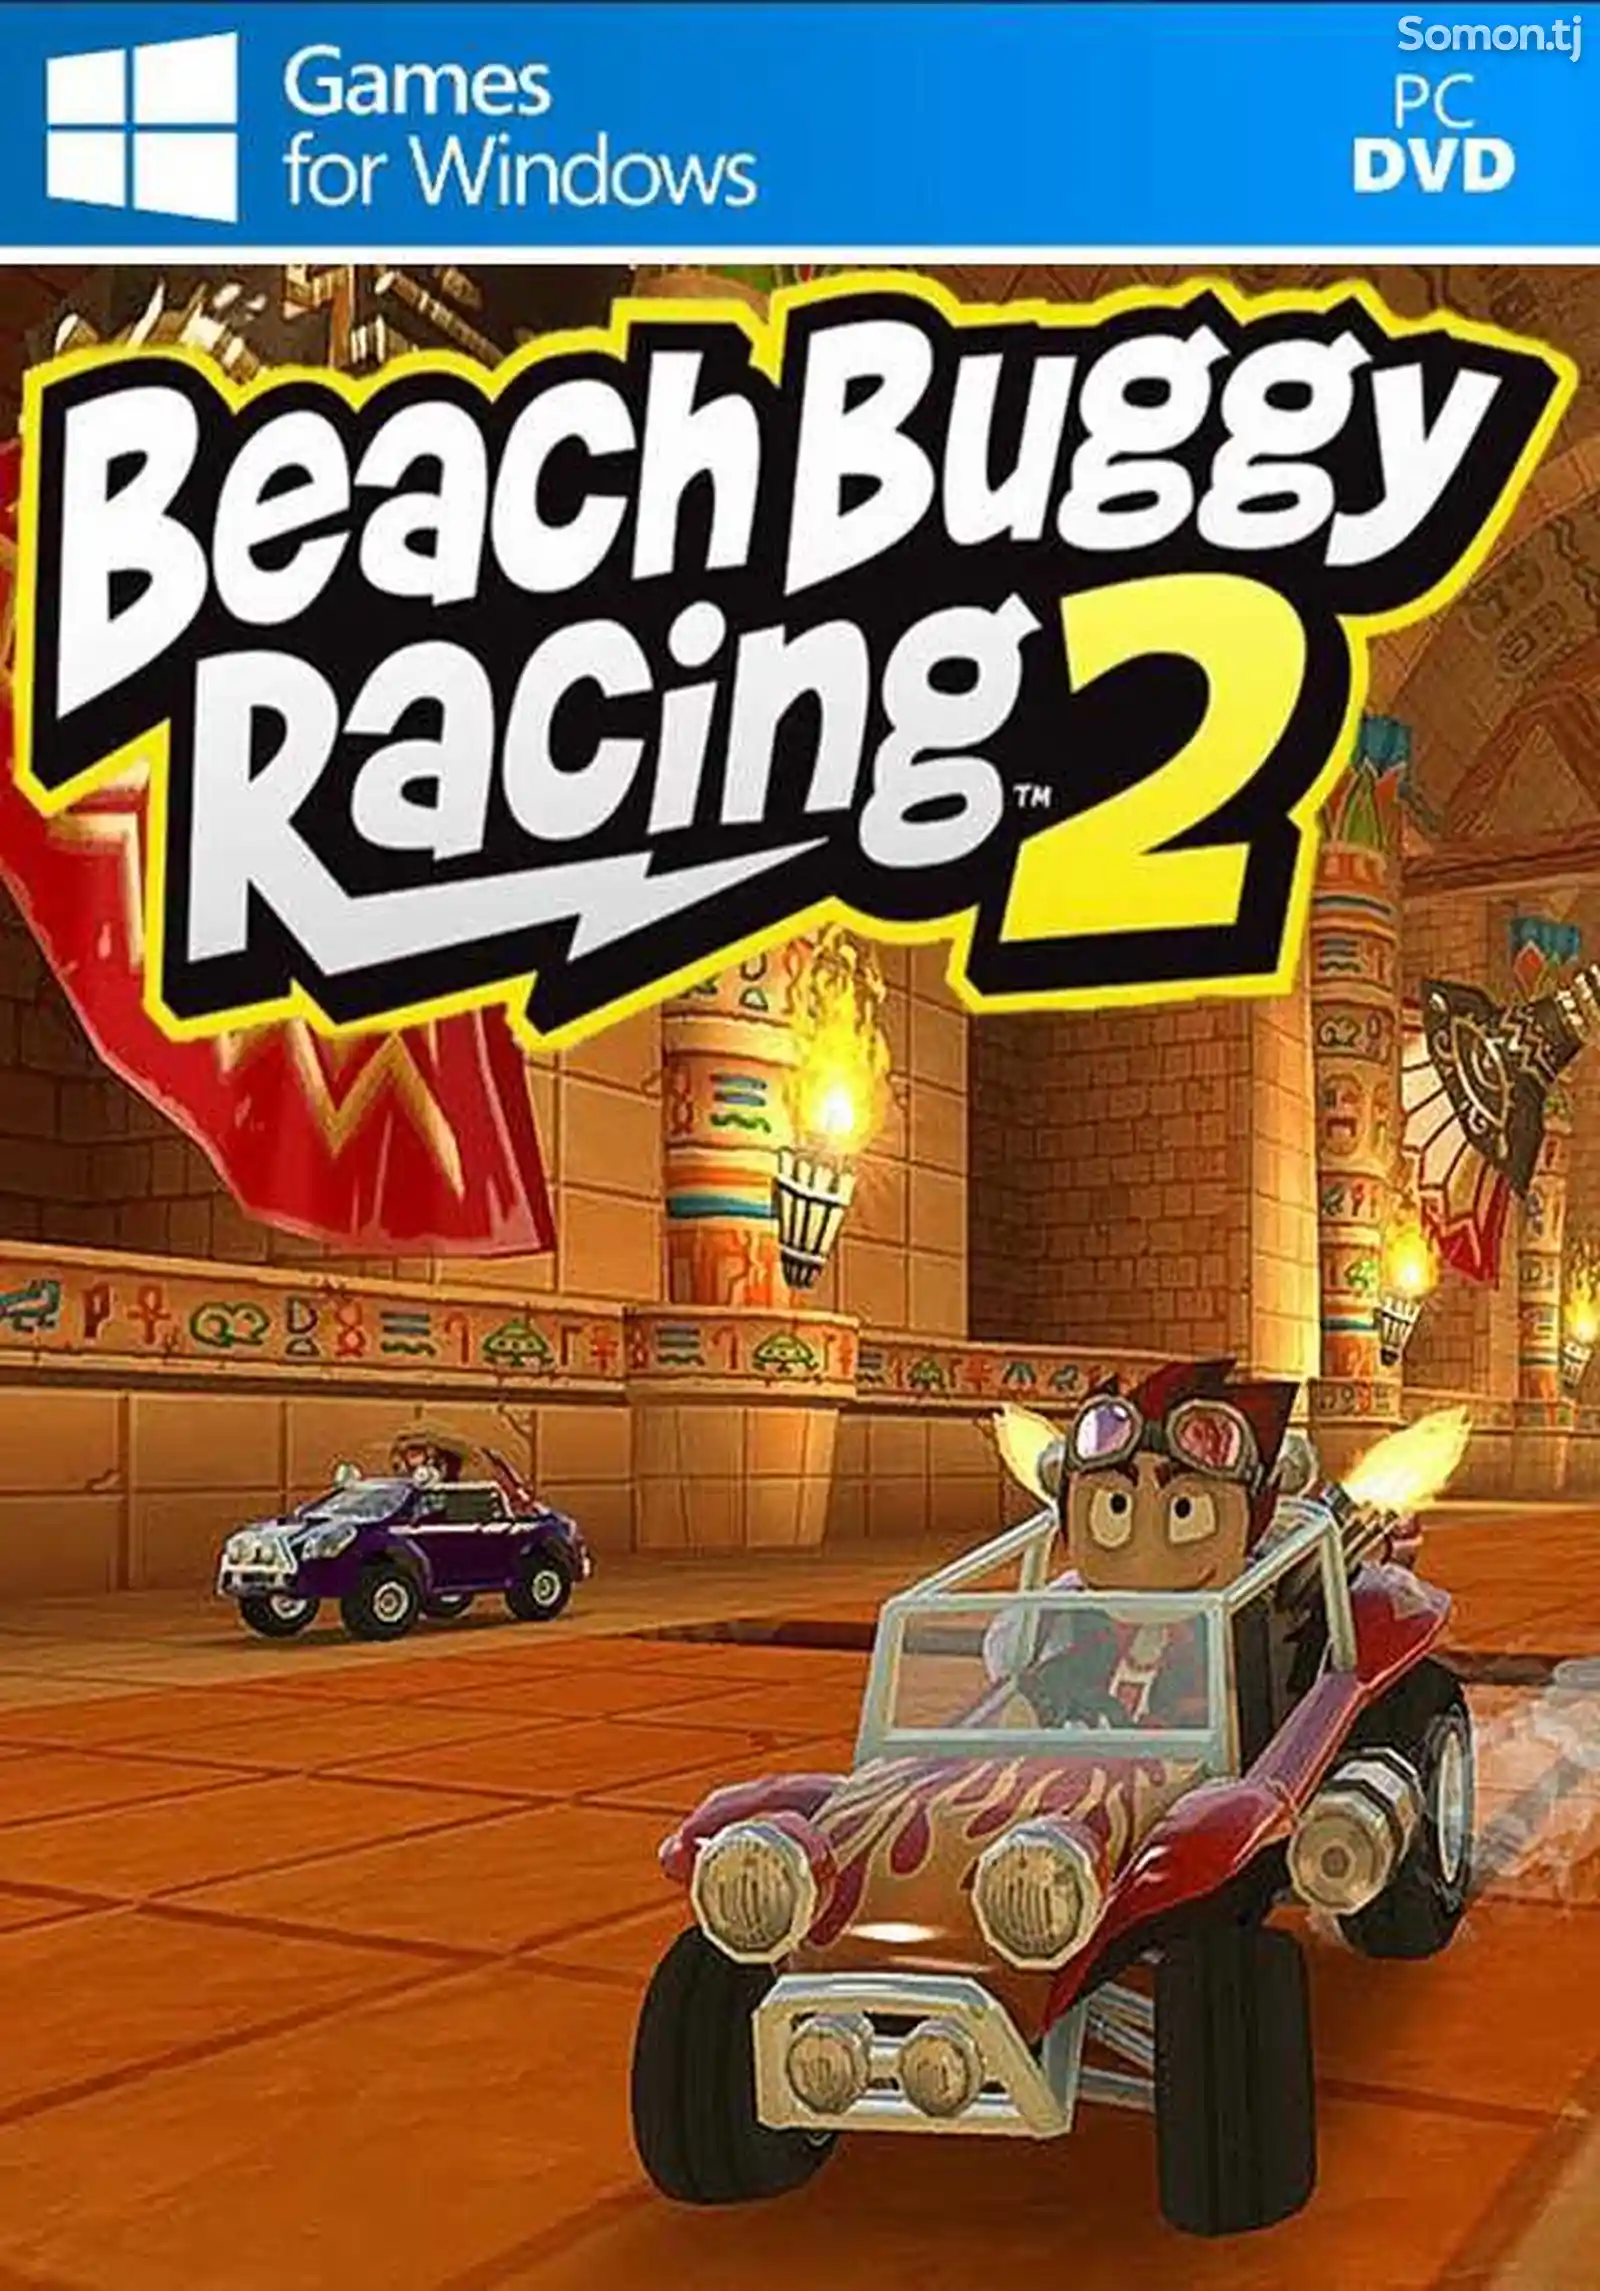 Игра Beach buggy racing 2 для компьютера-пк-pc-1